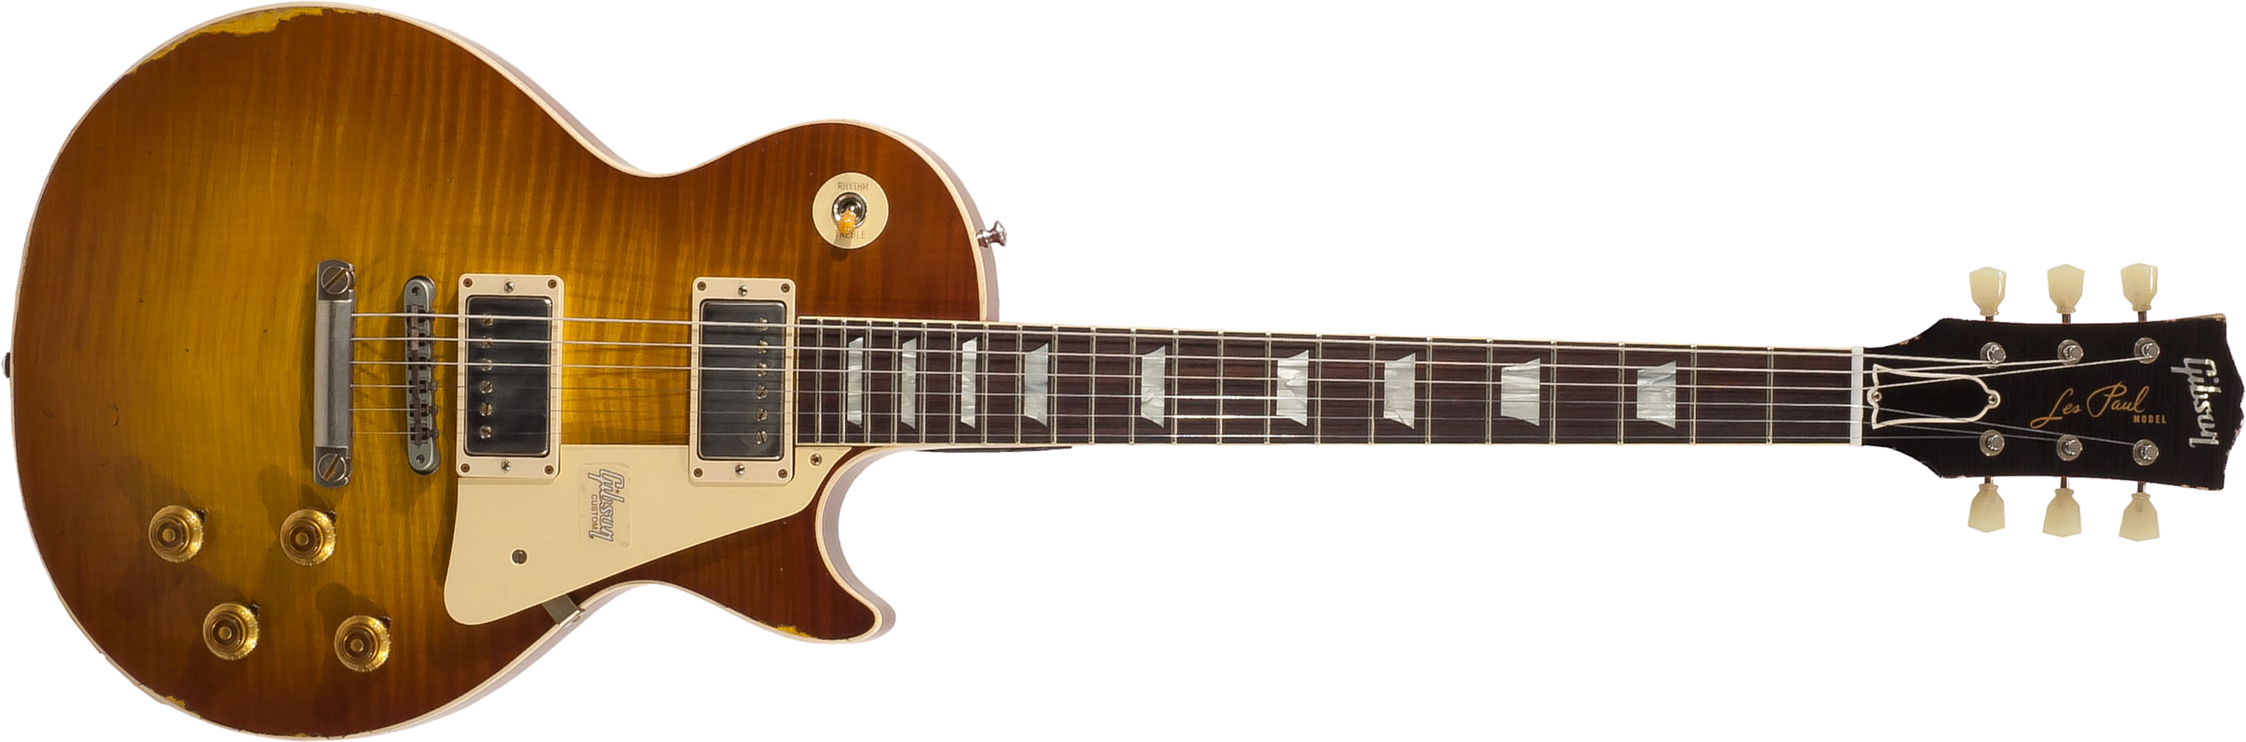 Gibson Custom Shop M2m Les Paul Standard 1959 2h Ht Rw #982192 - Heavy Aged Sunrise Tea Burst - Guitare Électrique Single Cut - Main picture